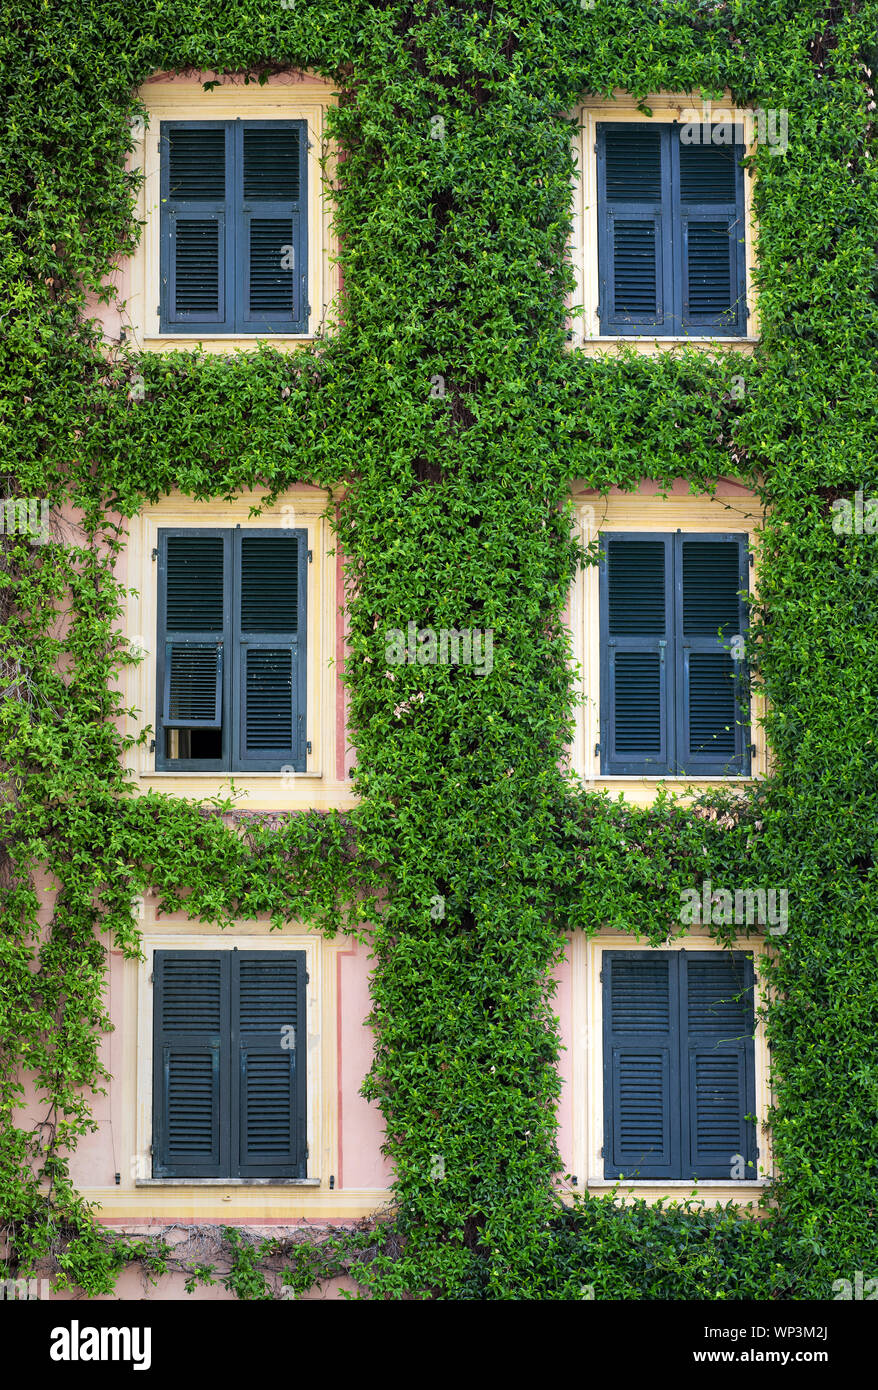 Façade avant d'un bâtiment recouvert d'un réducteur de légumes verts façonnés avec soin autour des fenêtres avec cadres bleus dans une vue plein cadre Banque D'Images